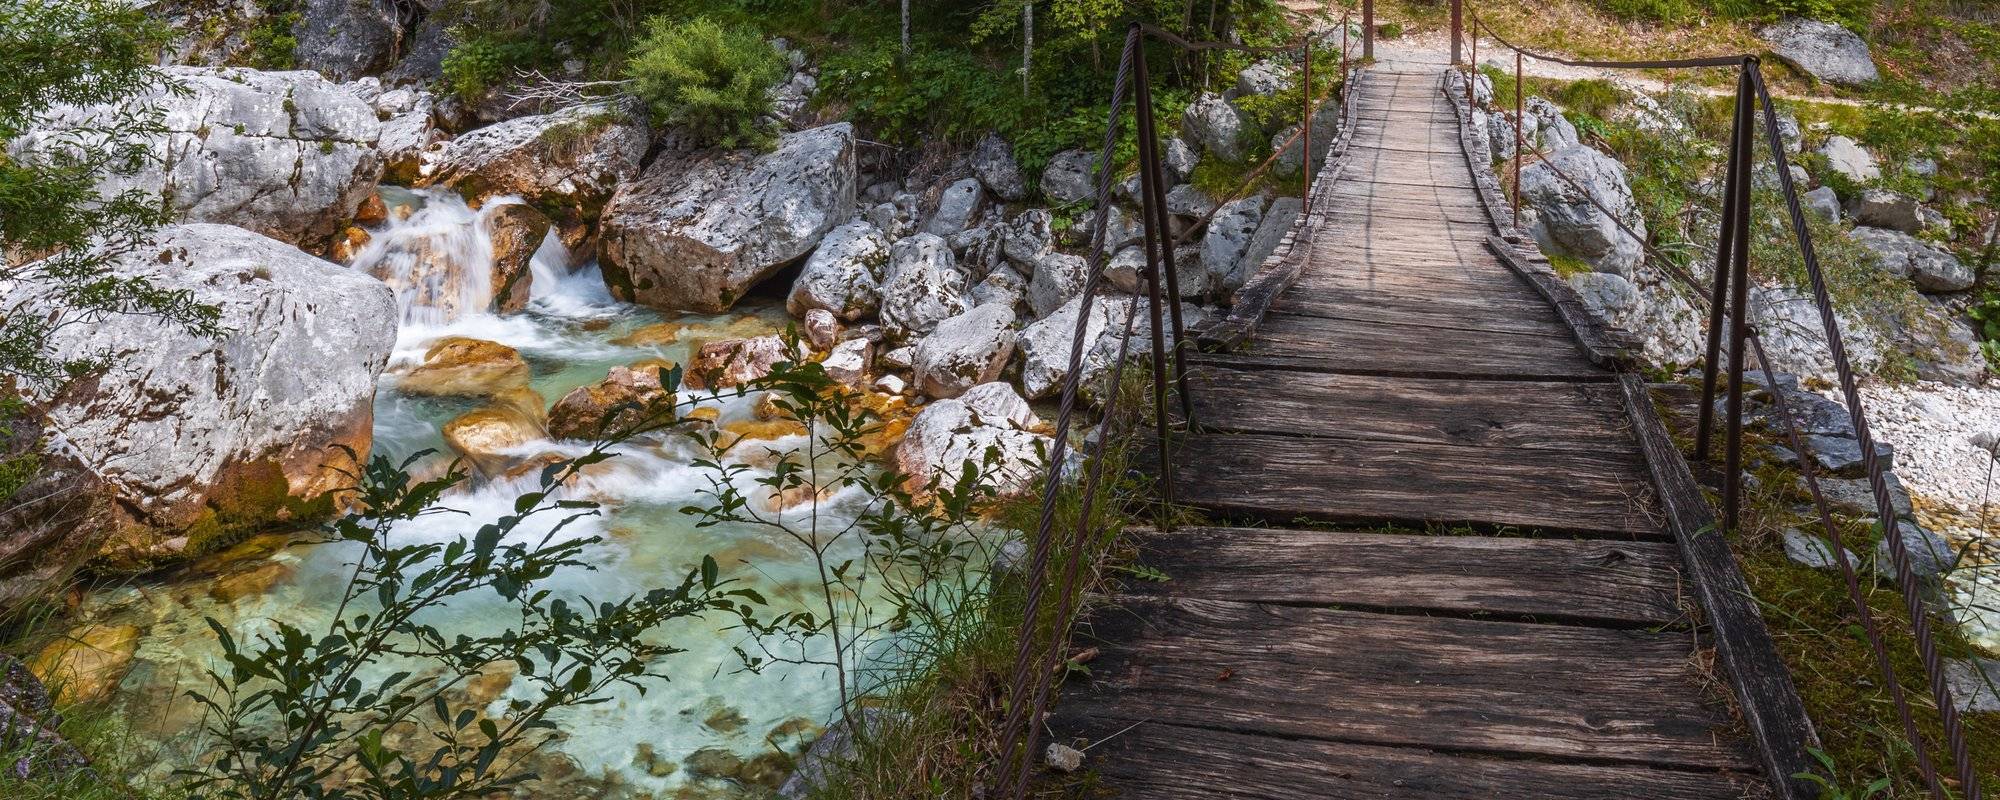 Mlinarica Waterfall / Mlinarica Wasserfall (Triglav National Park, Slovenia)